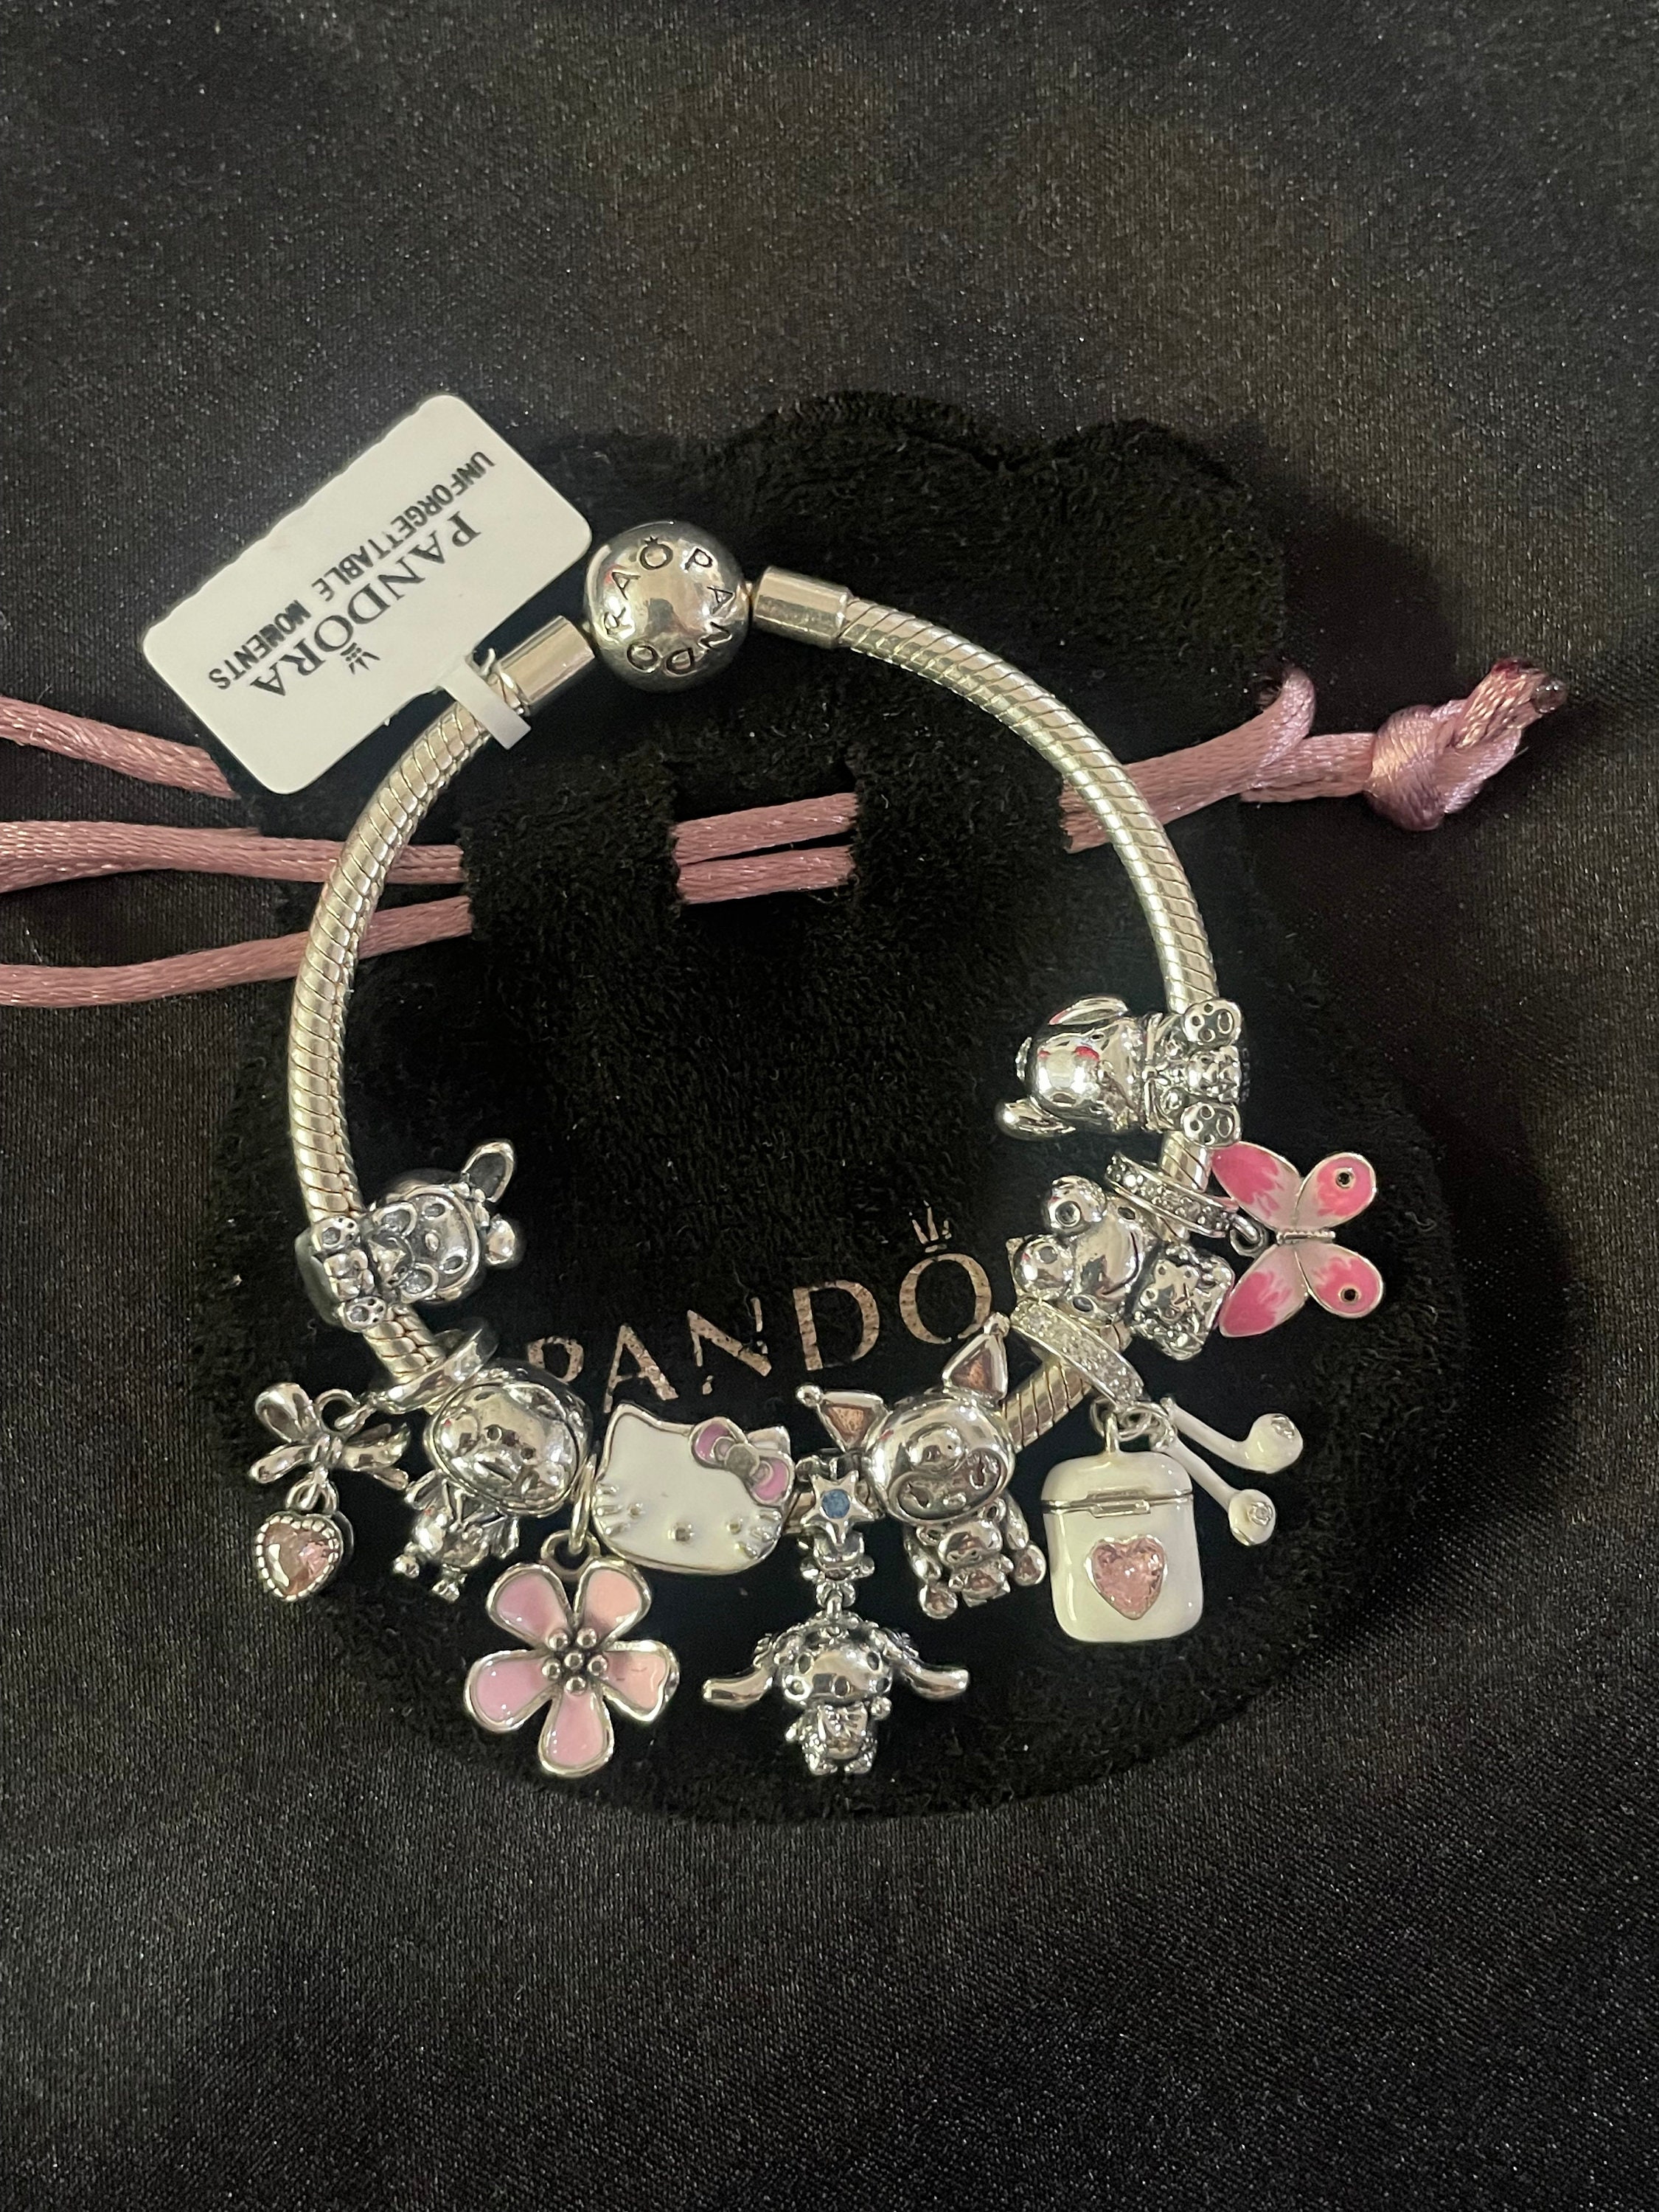 Hello Kitty Pandora charm bracelet  Pandora bracelet pink, Pandora  bracelet designs, Pandora bracelet charms ideas